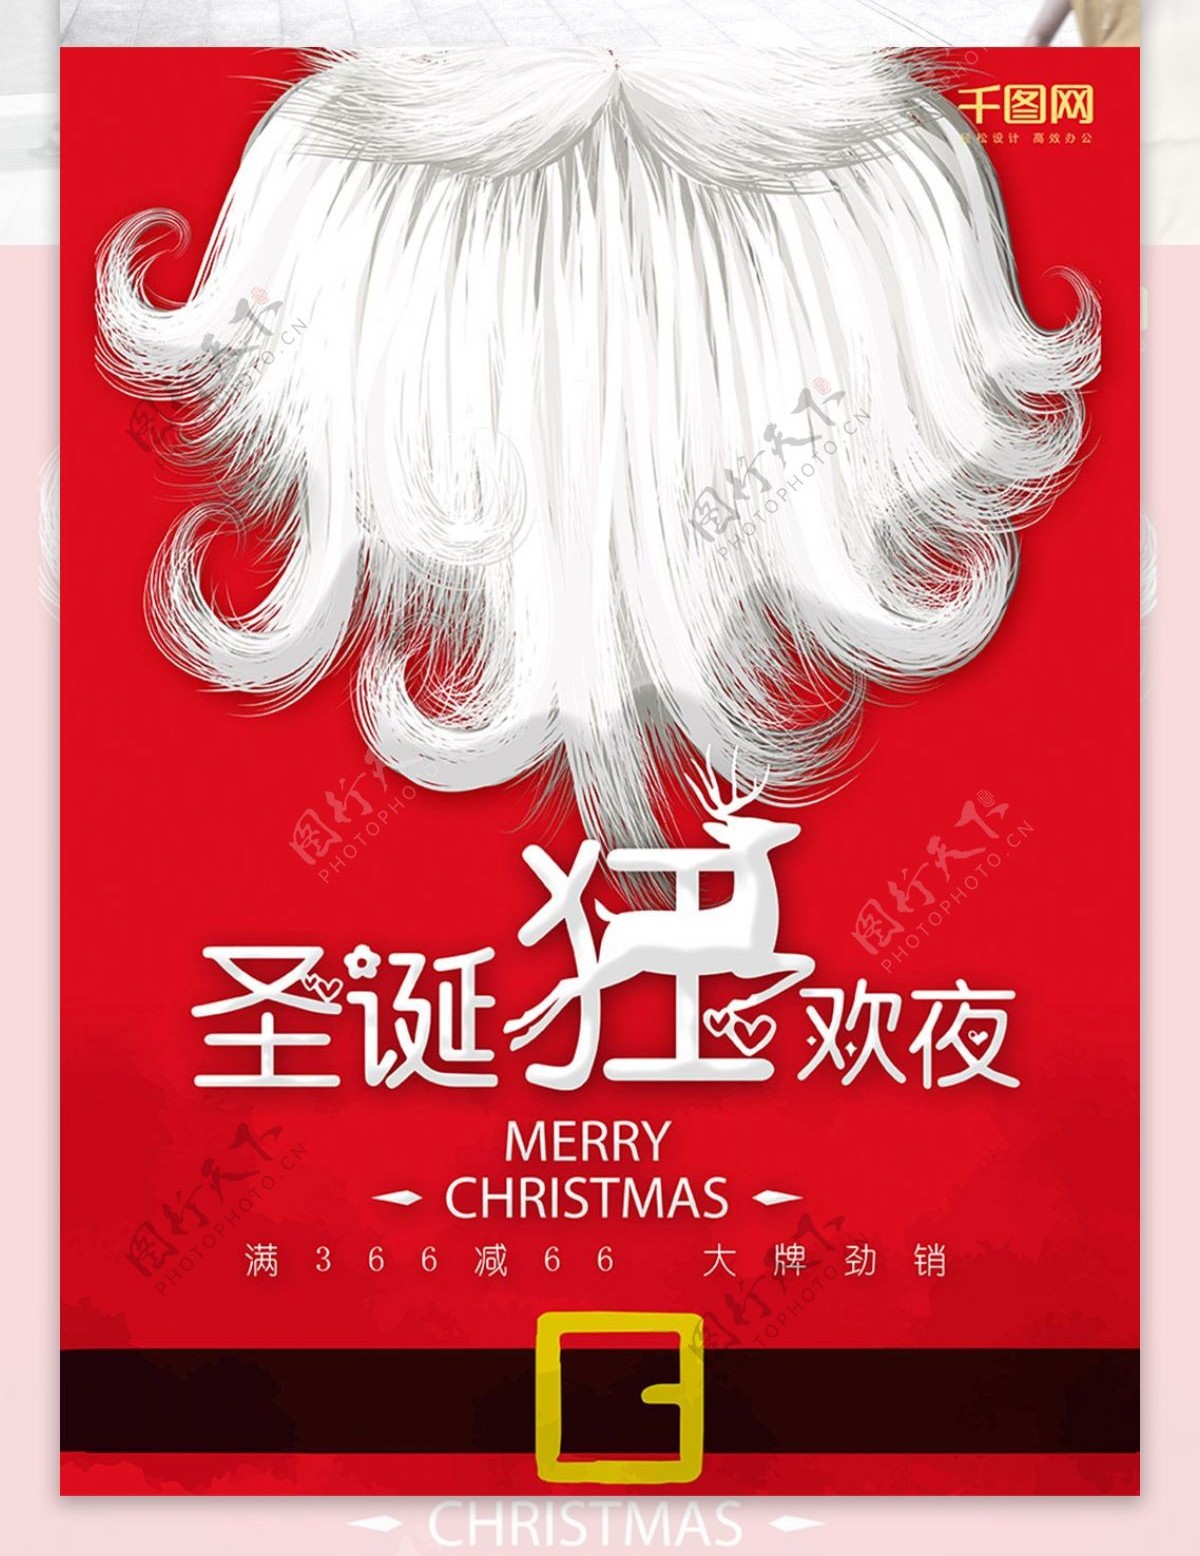 红色背景圣诞节老人胡子海报设计